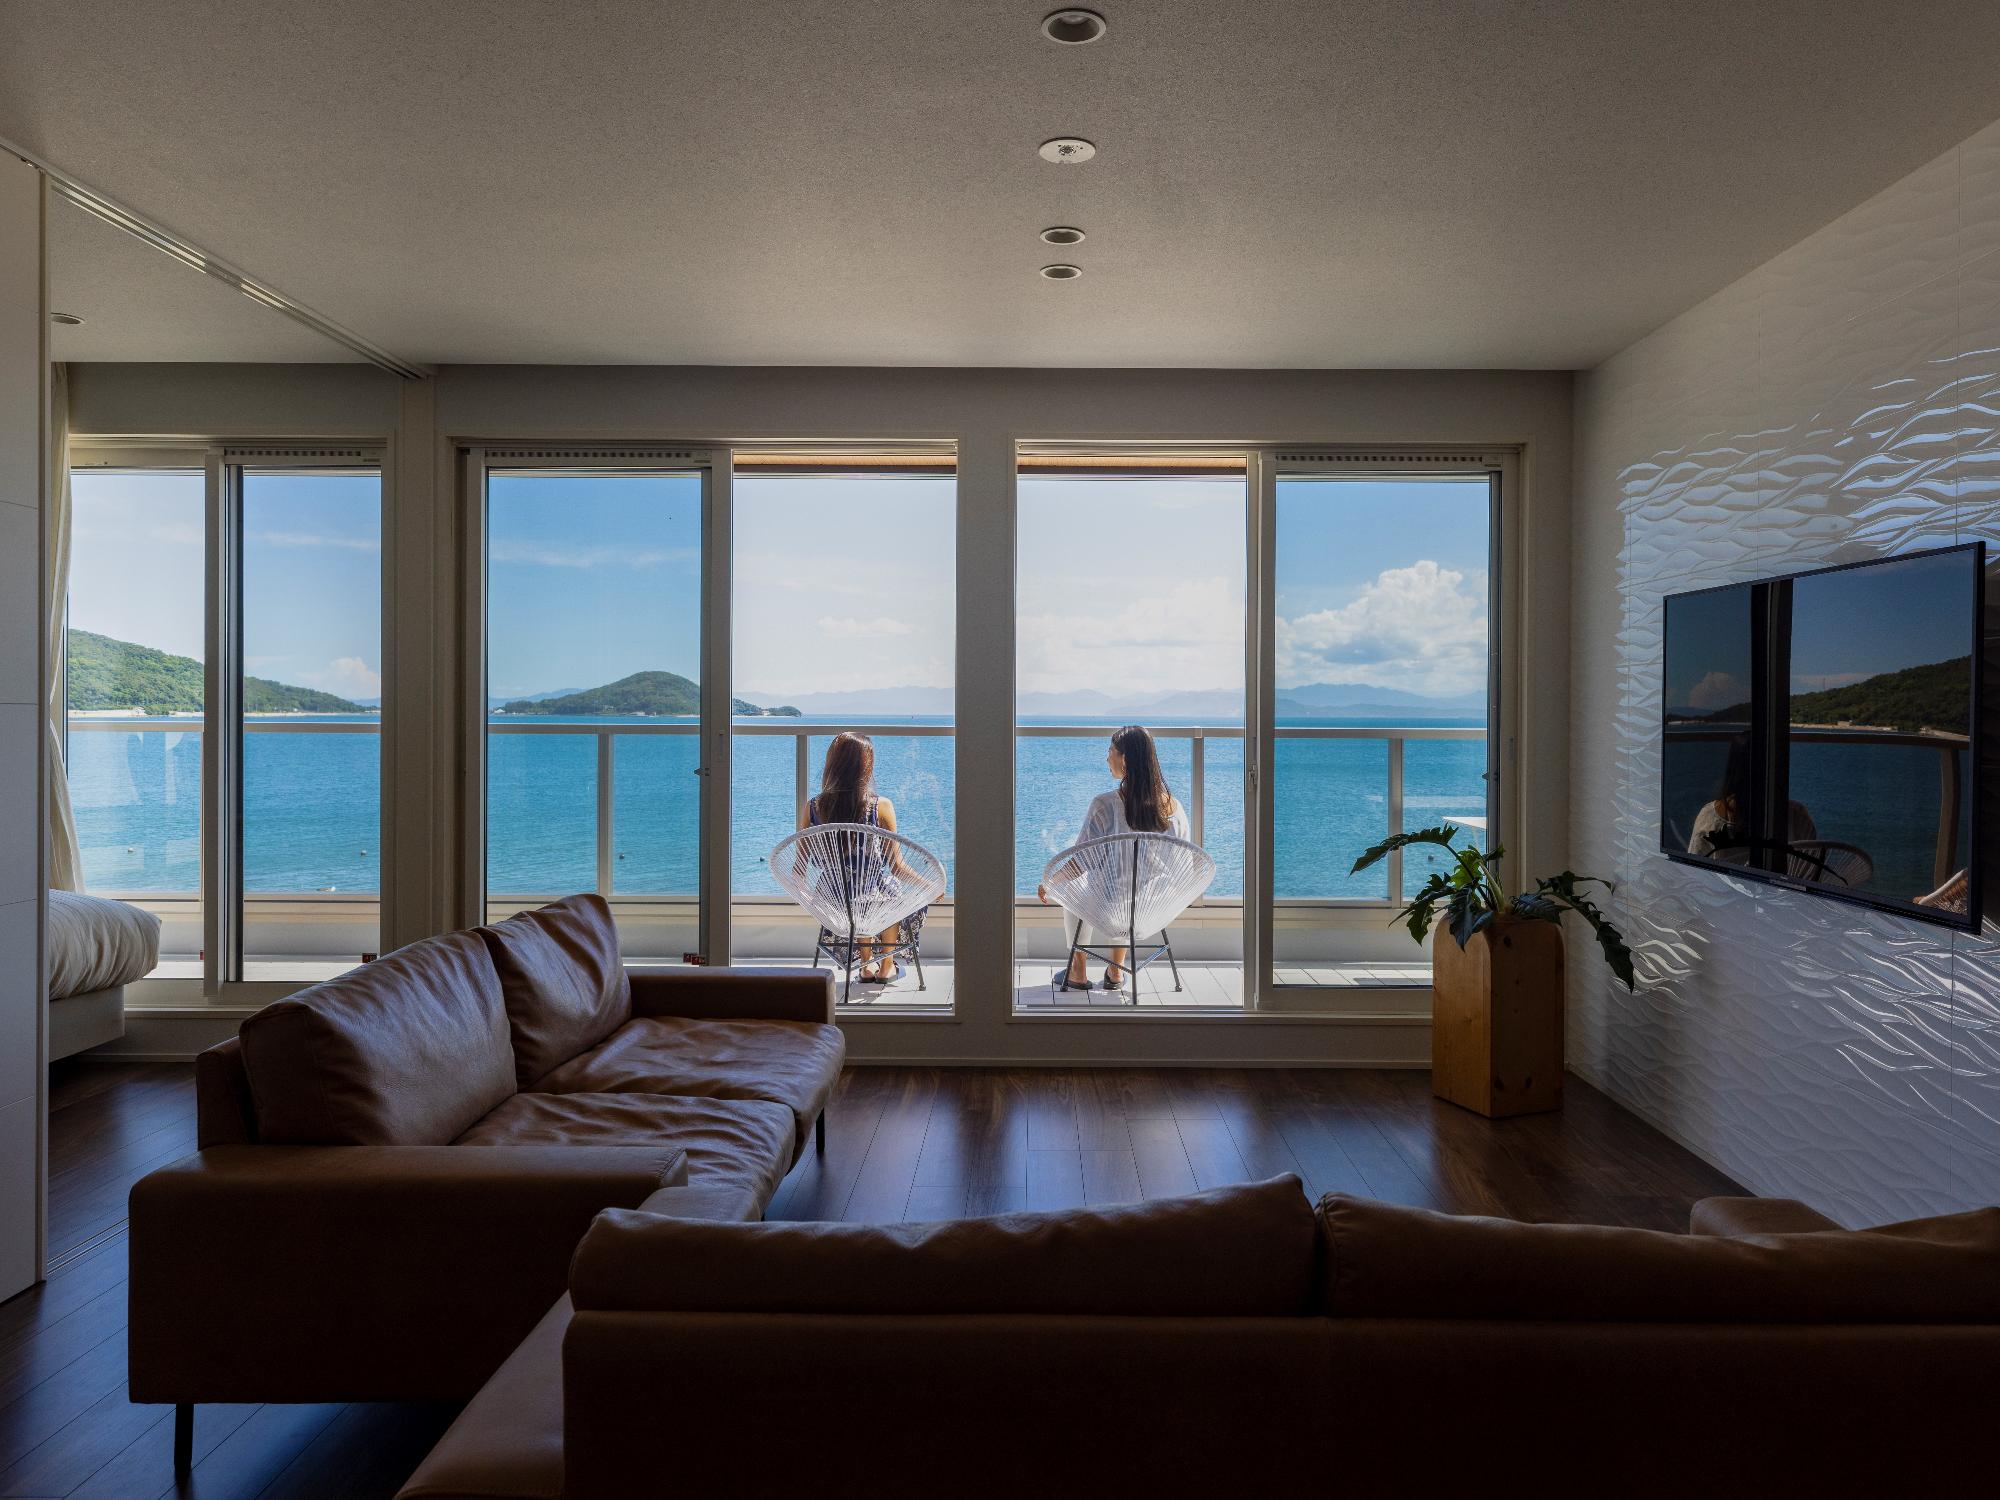 瀬戸内SUPリゾート碧の部屋と窓から見える海の写真